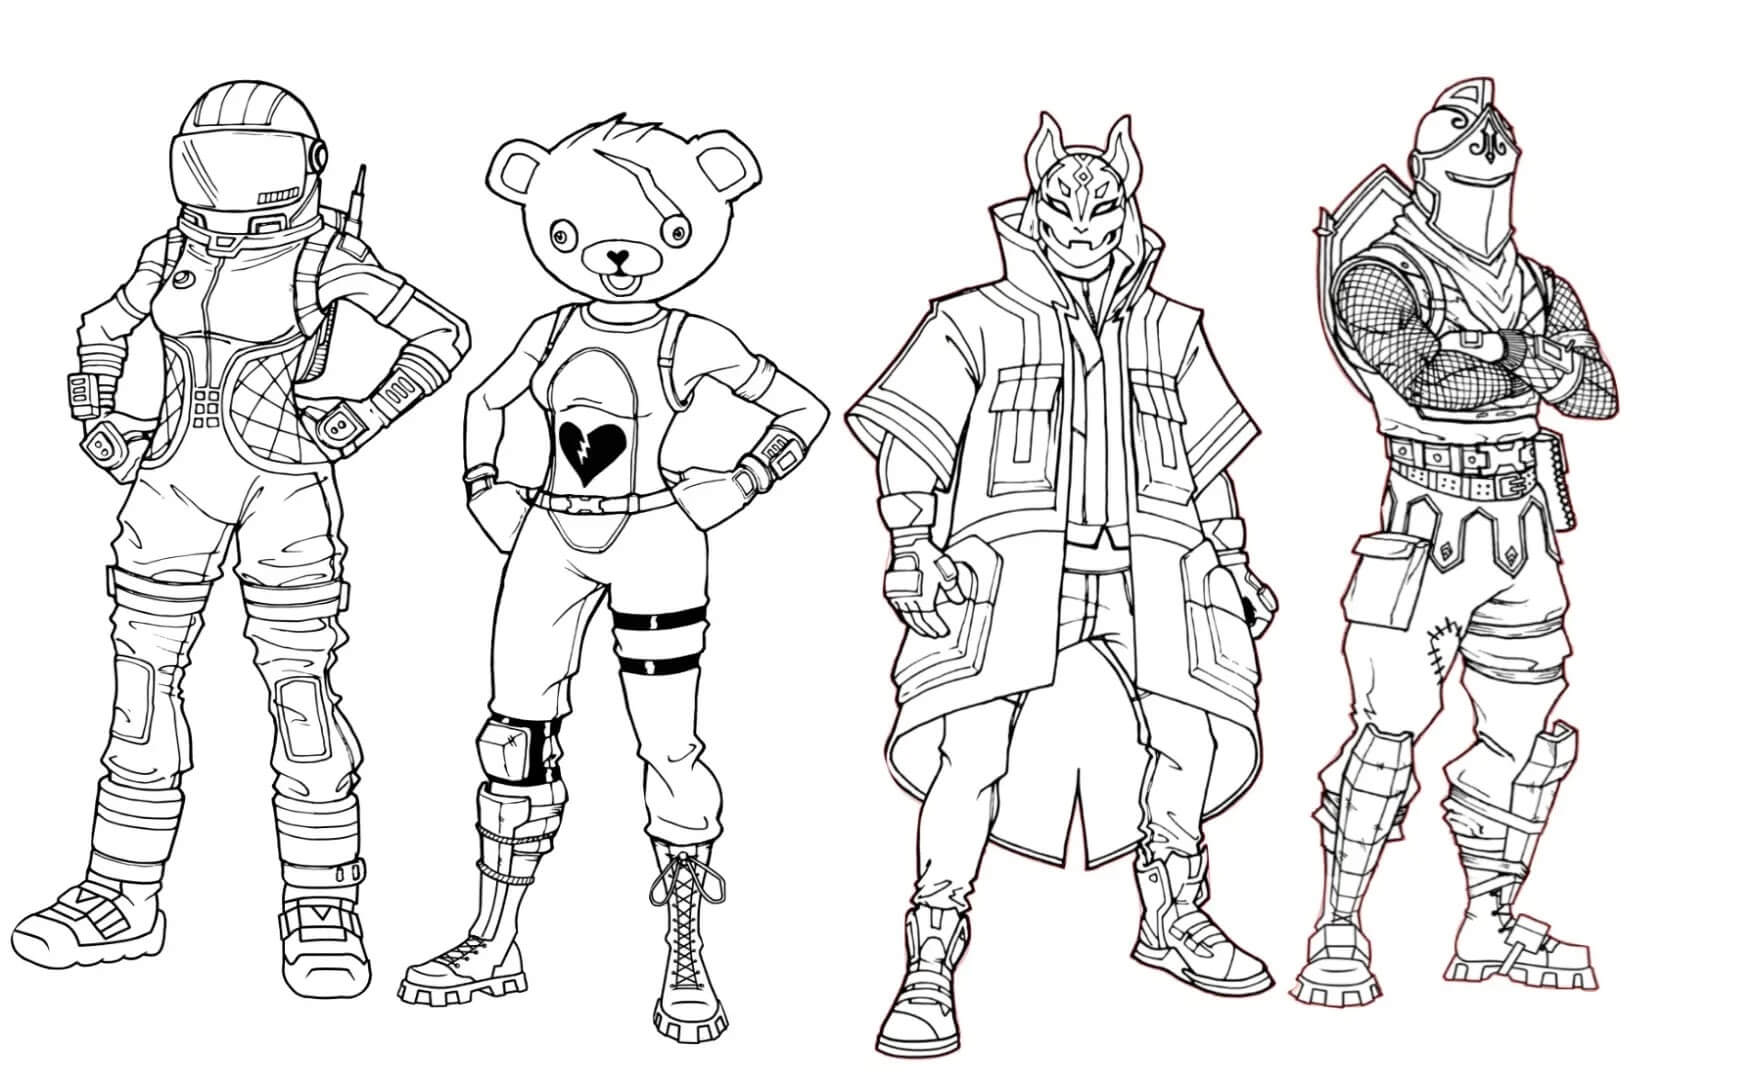 Quatro Personagens da Fortnite para colorir